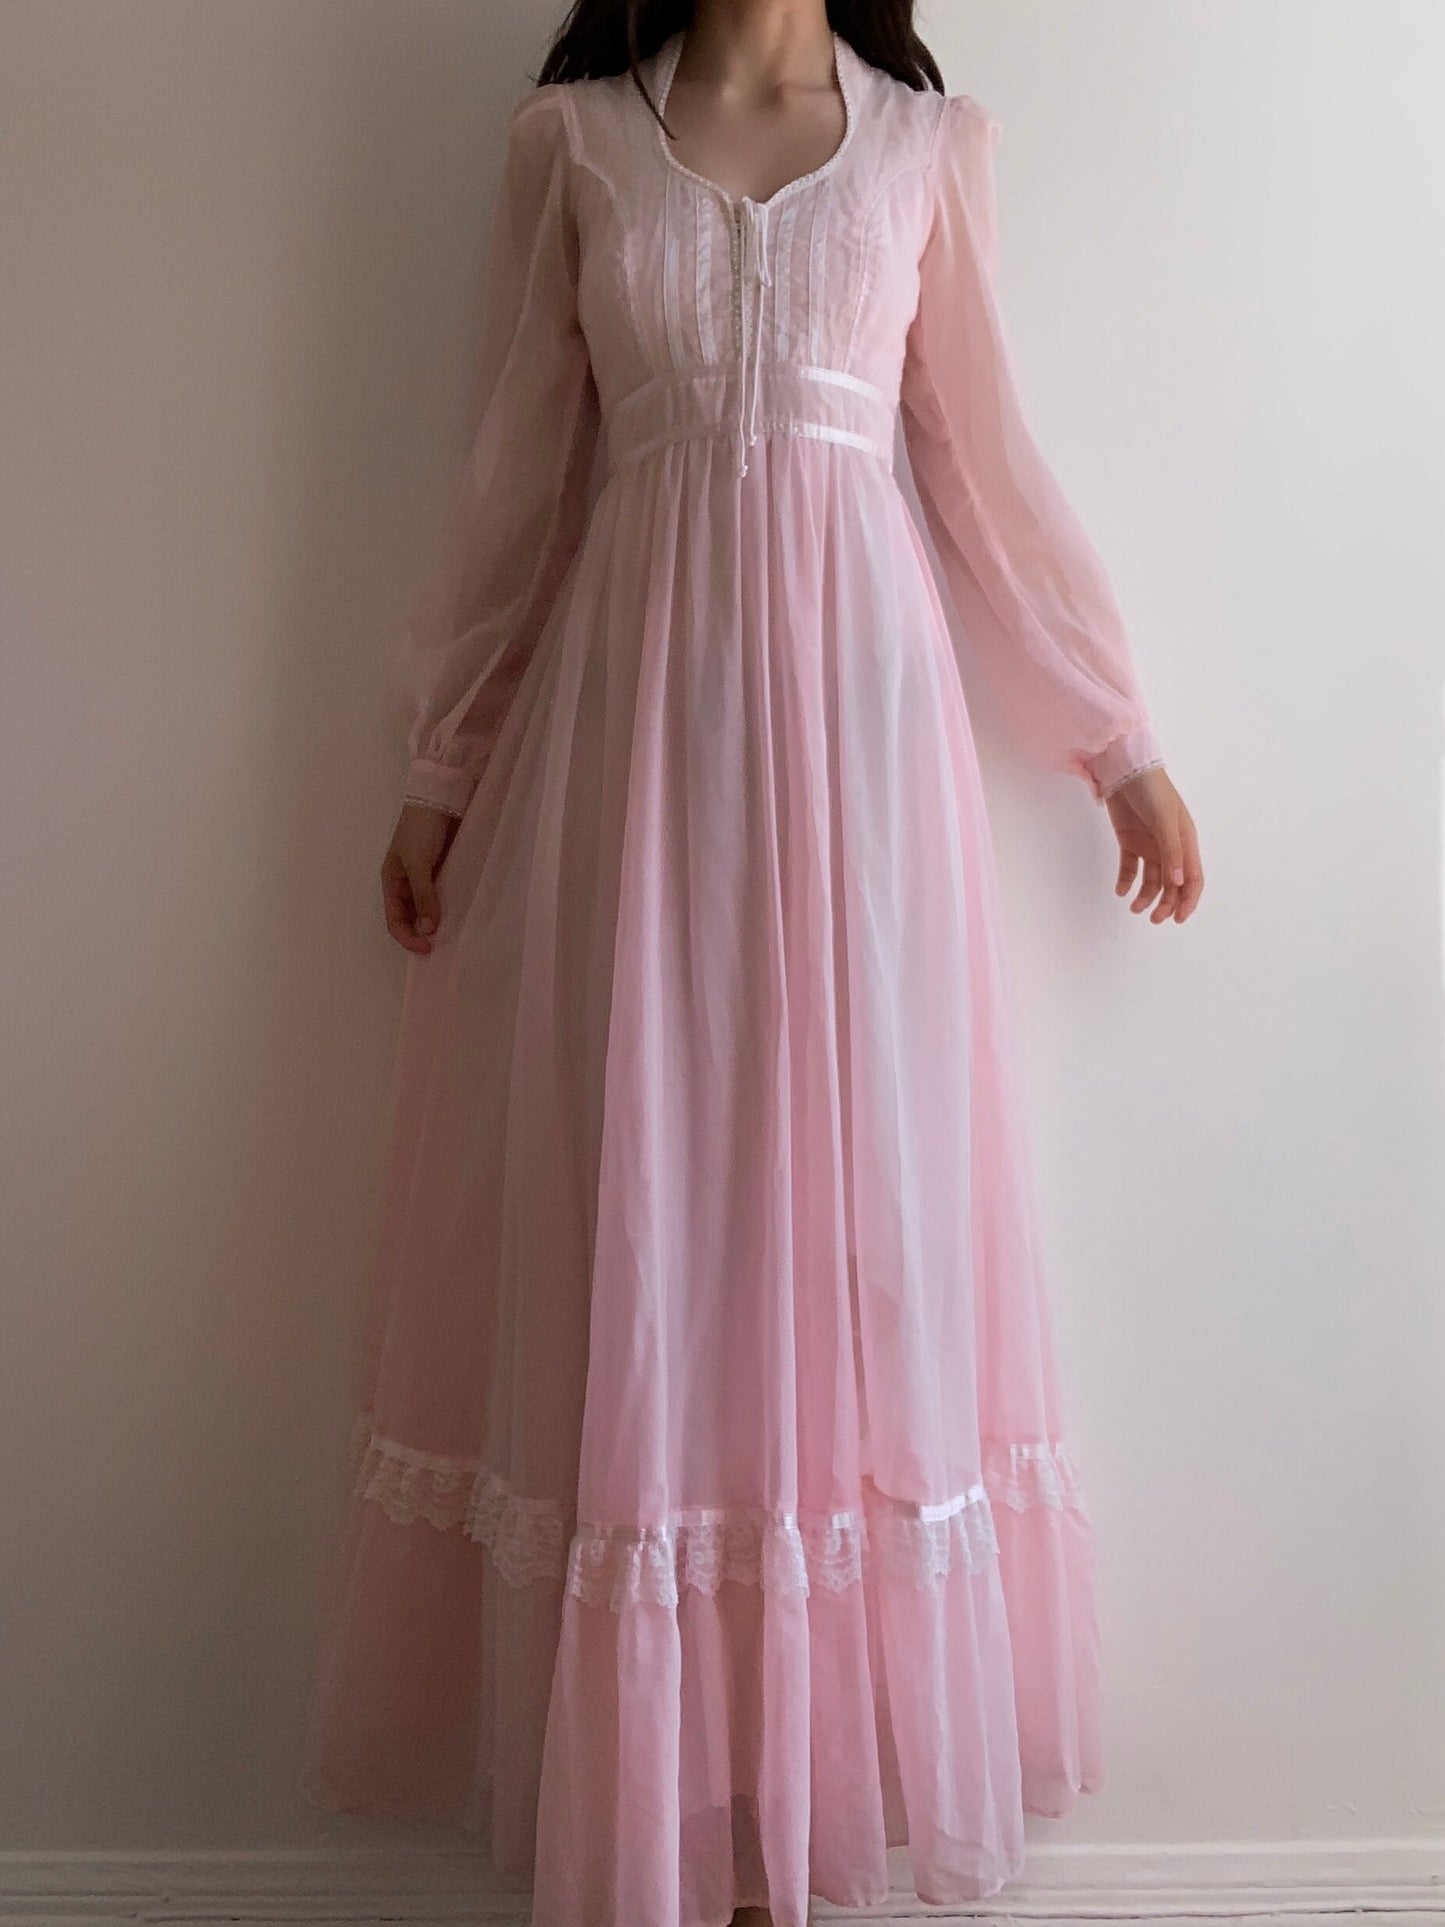 Gunne Sax Pink Princess Dress (XS/S)